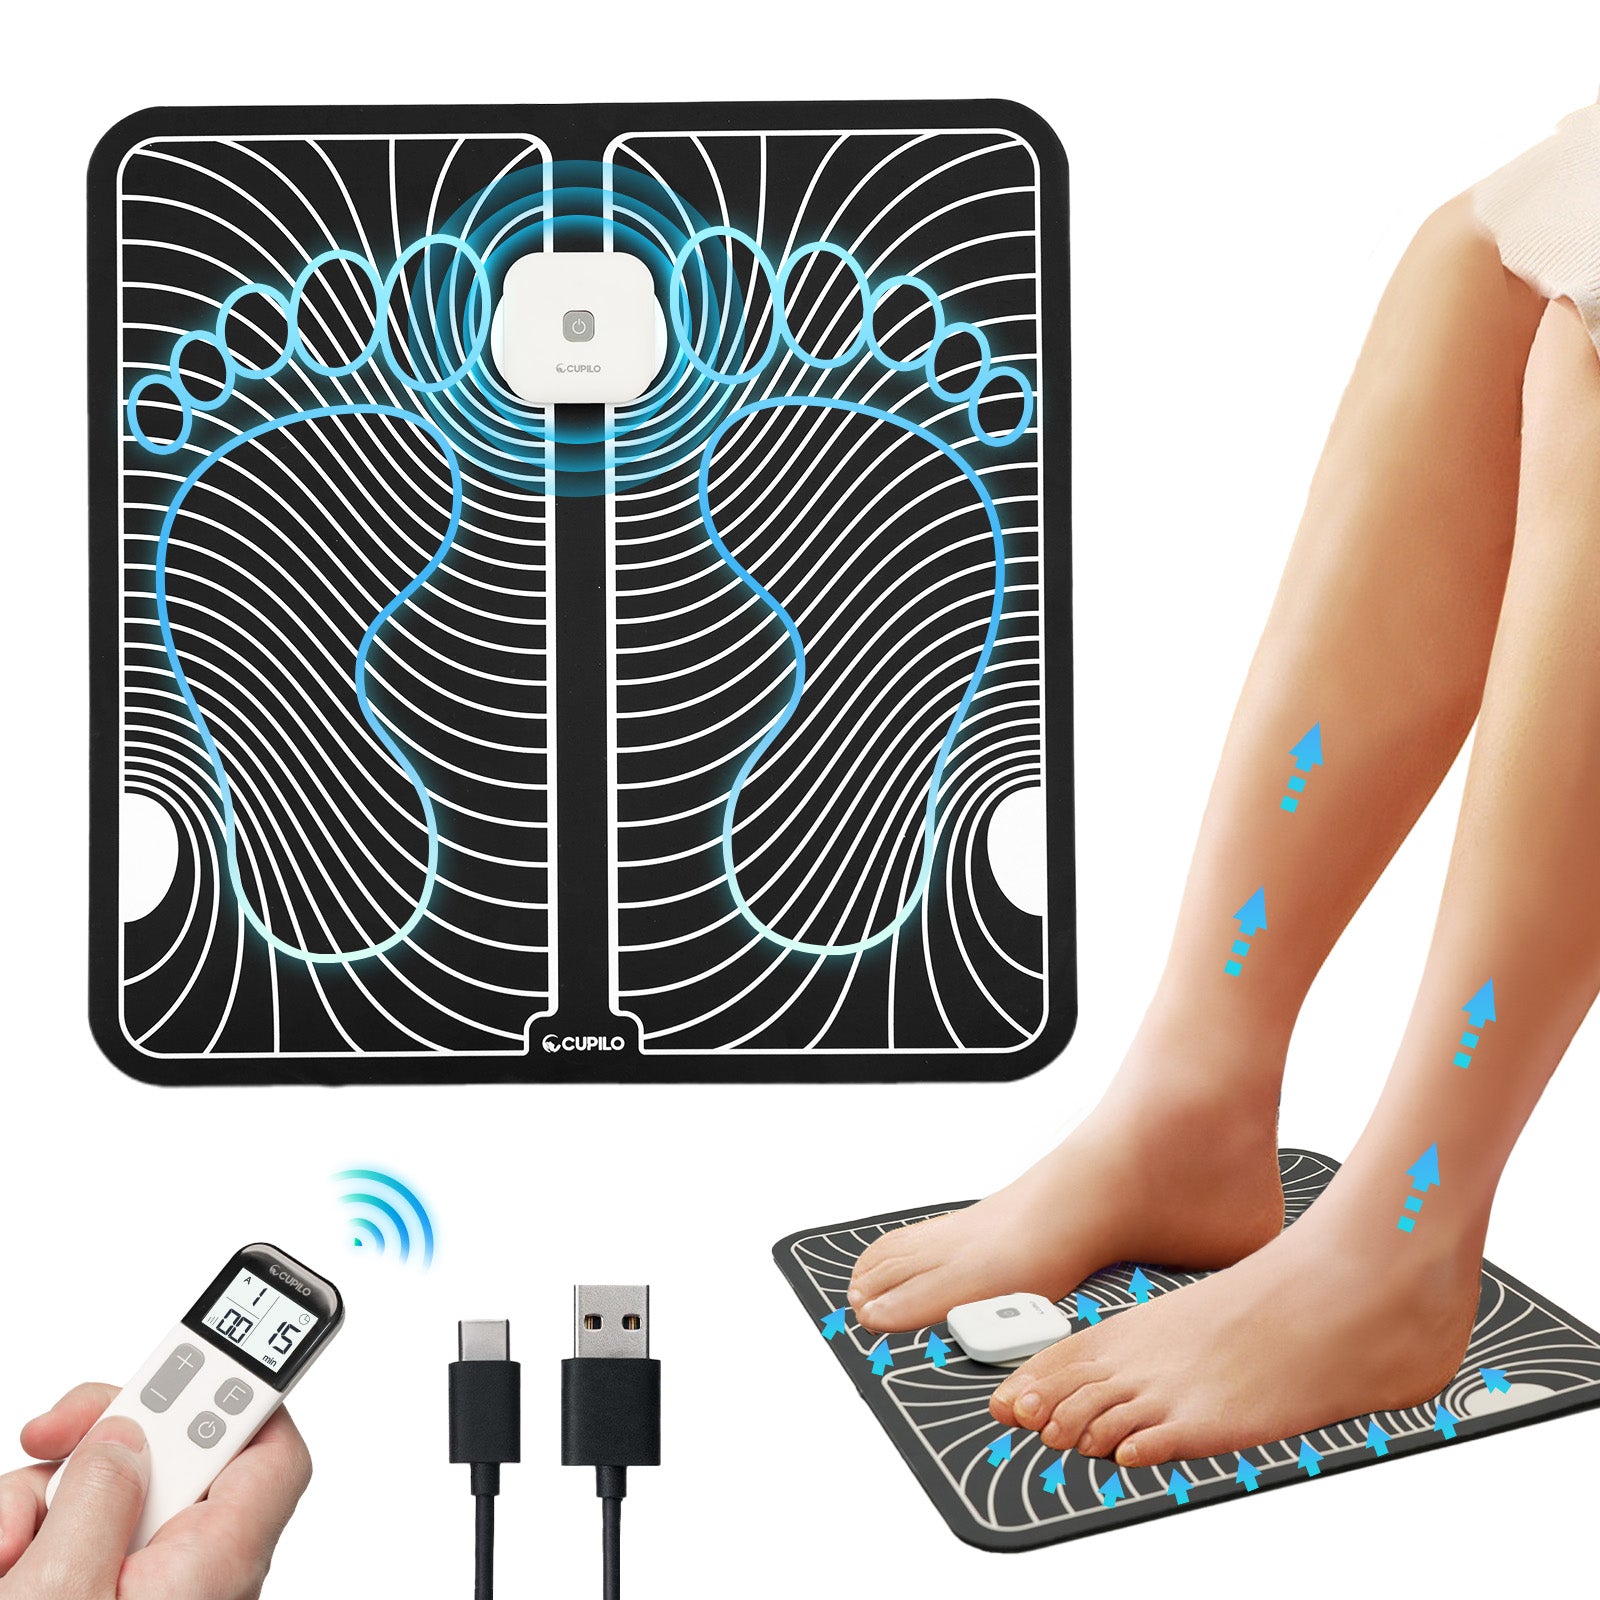 Cupilo Ems Foot Massager Mat for Neuropathy - KTR-2493